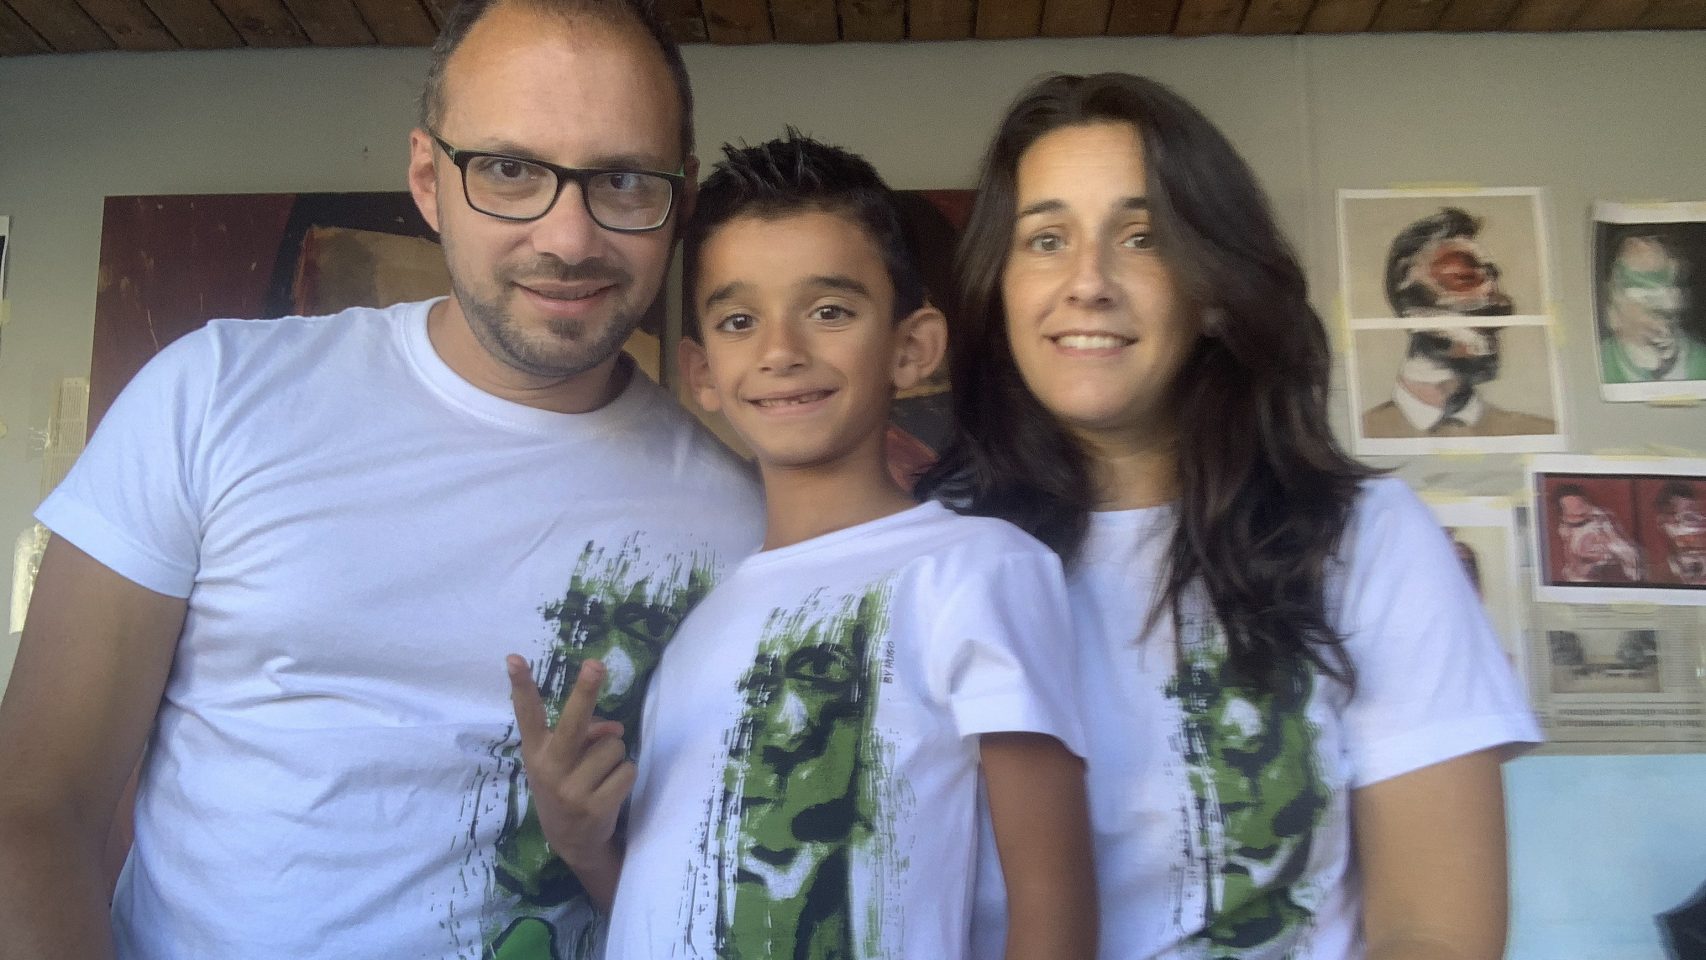 Fernando, Hugo y María con la camiseta solidaria de ART for DENT.